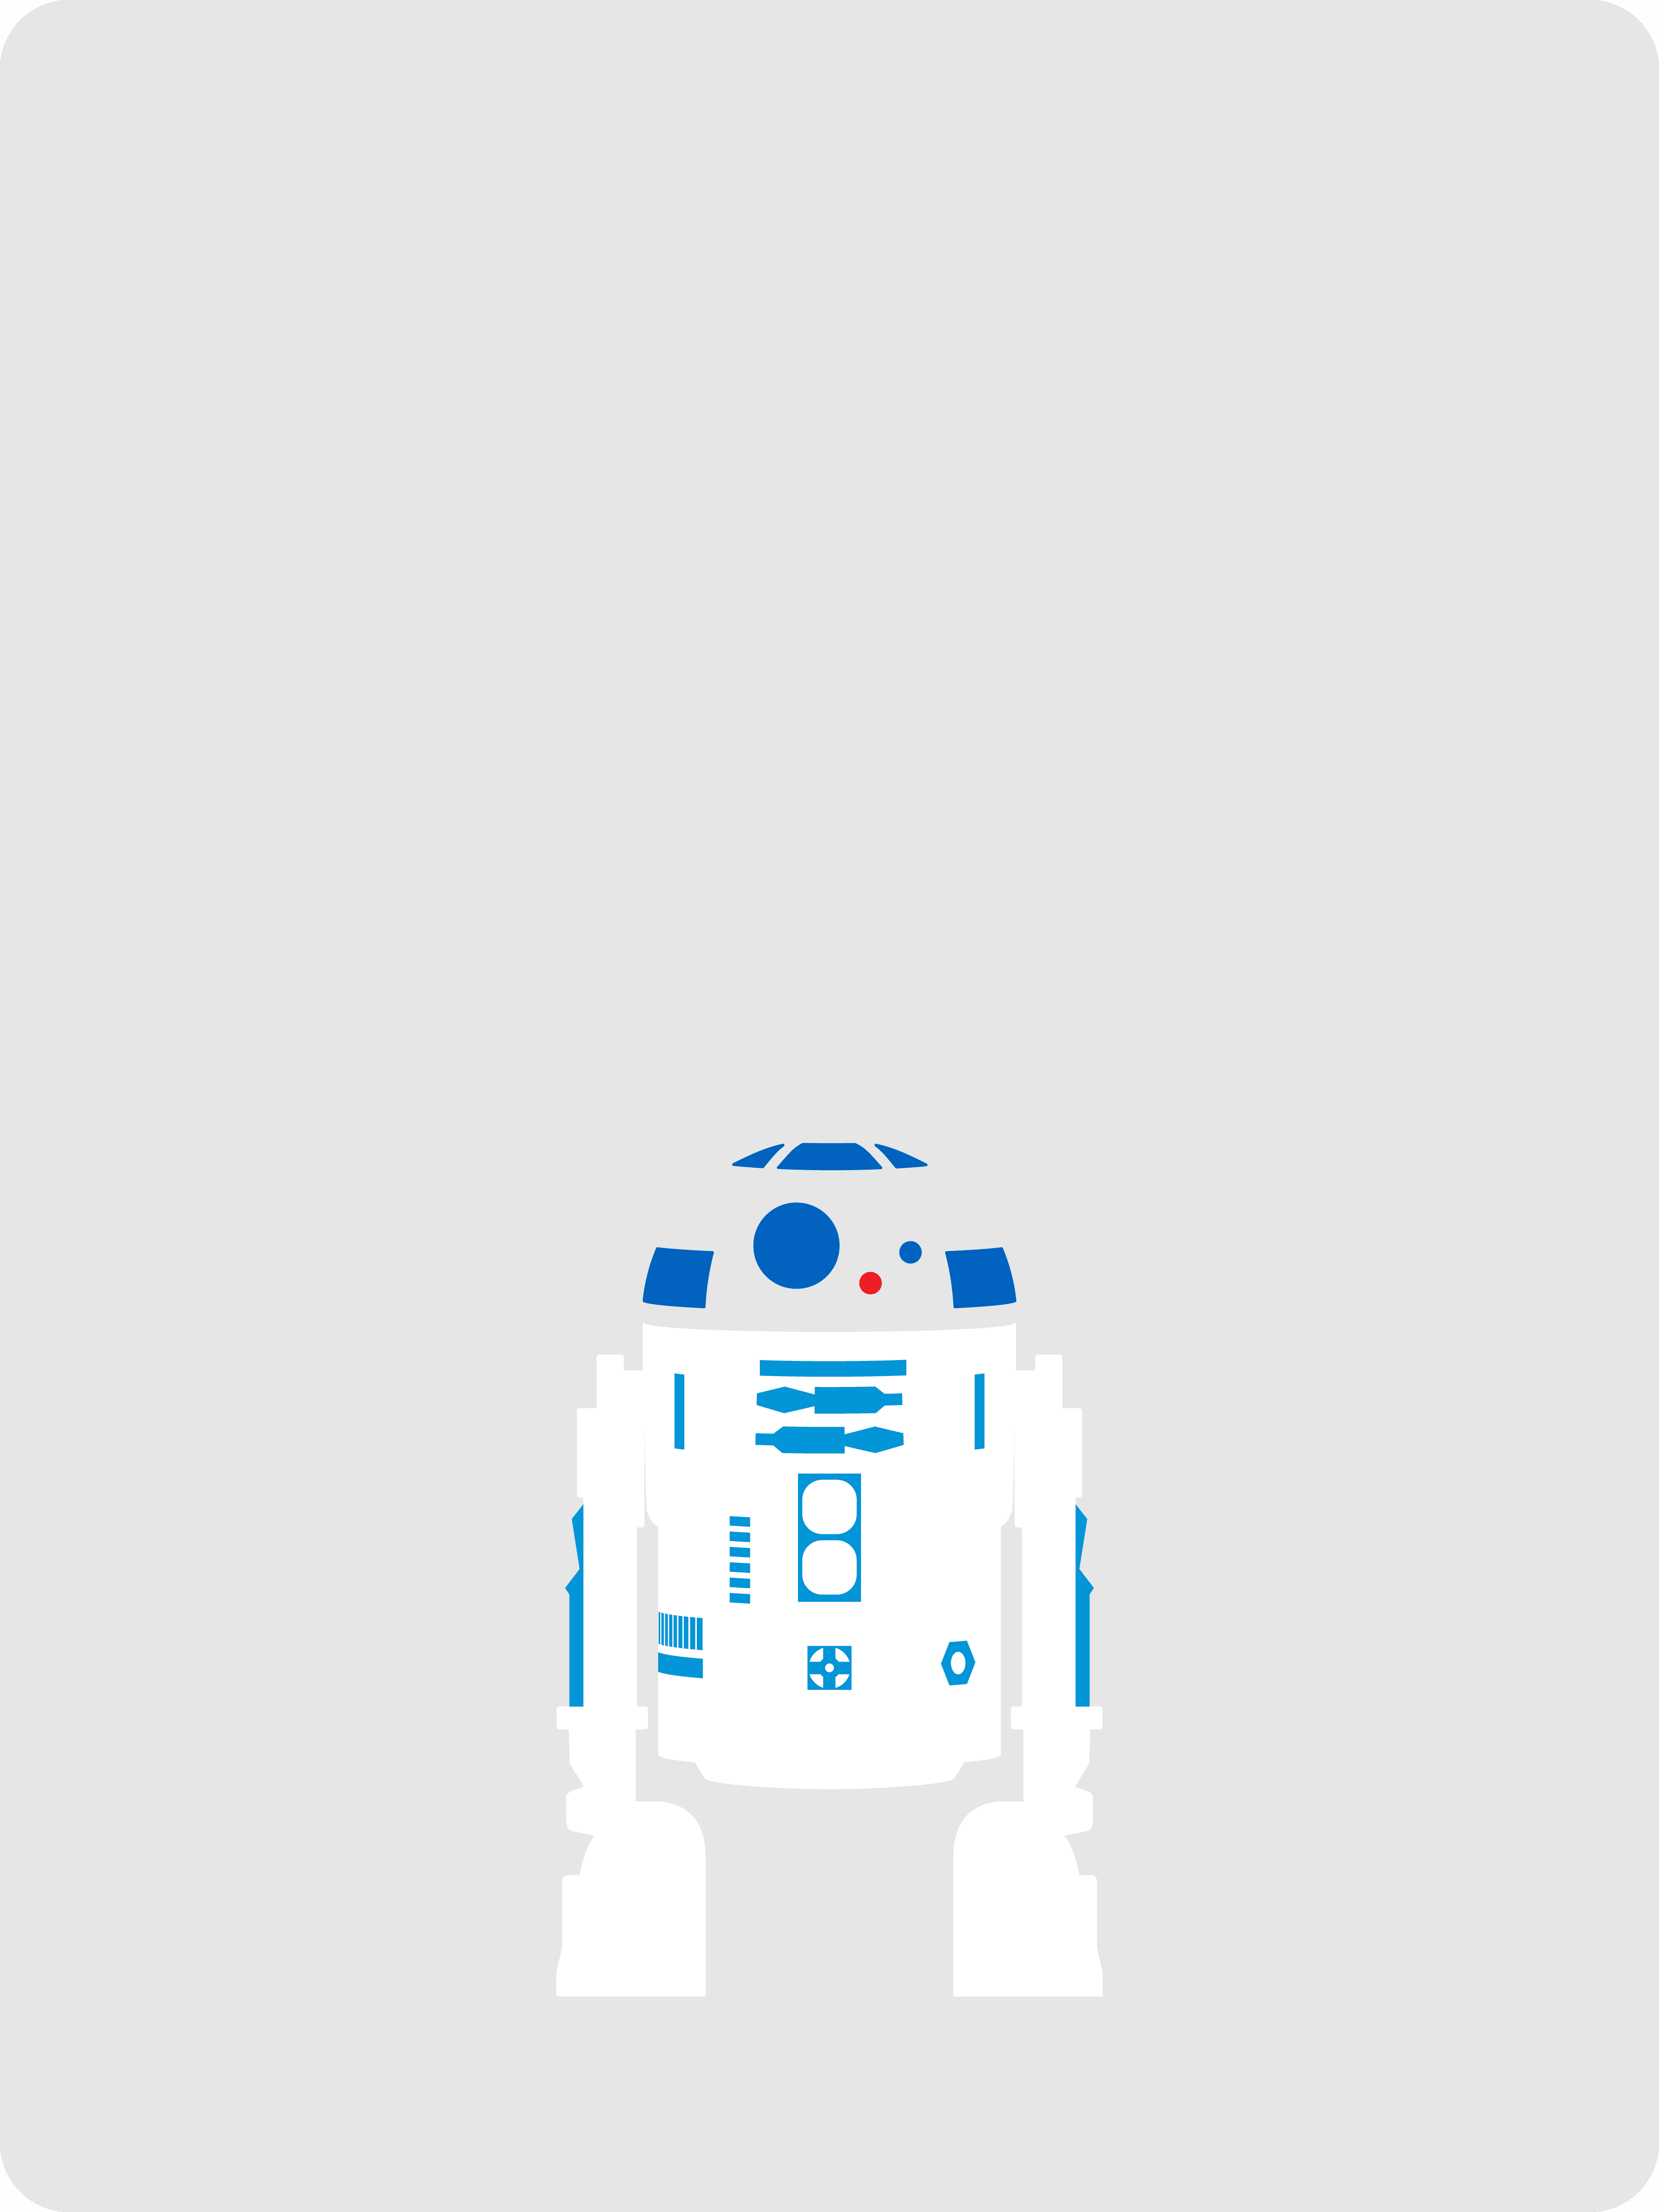 #001 Artoo-Detoo (R2-D2)